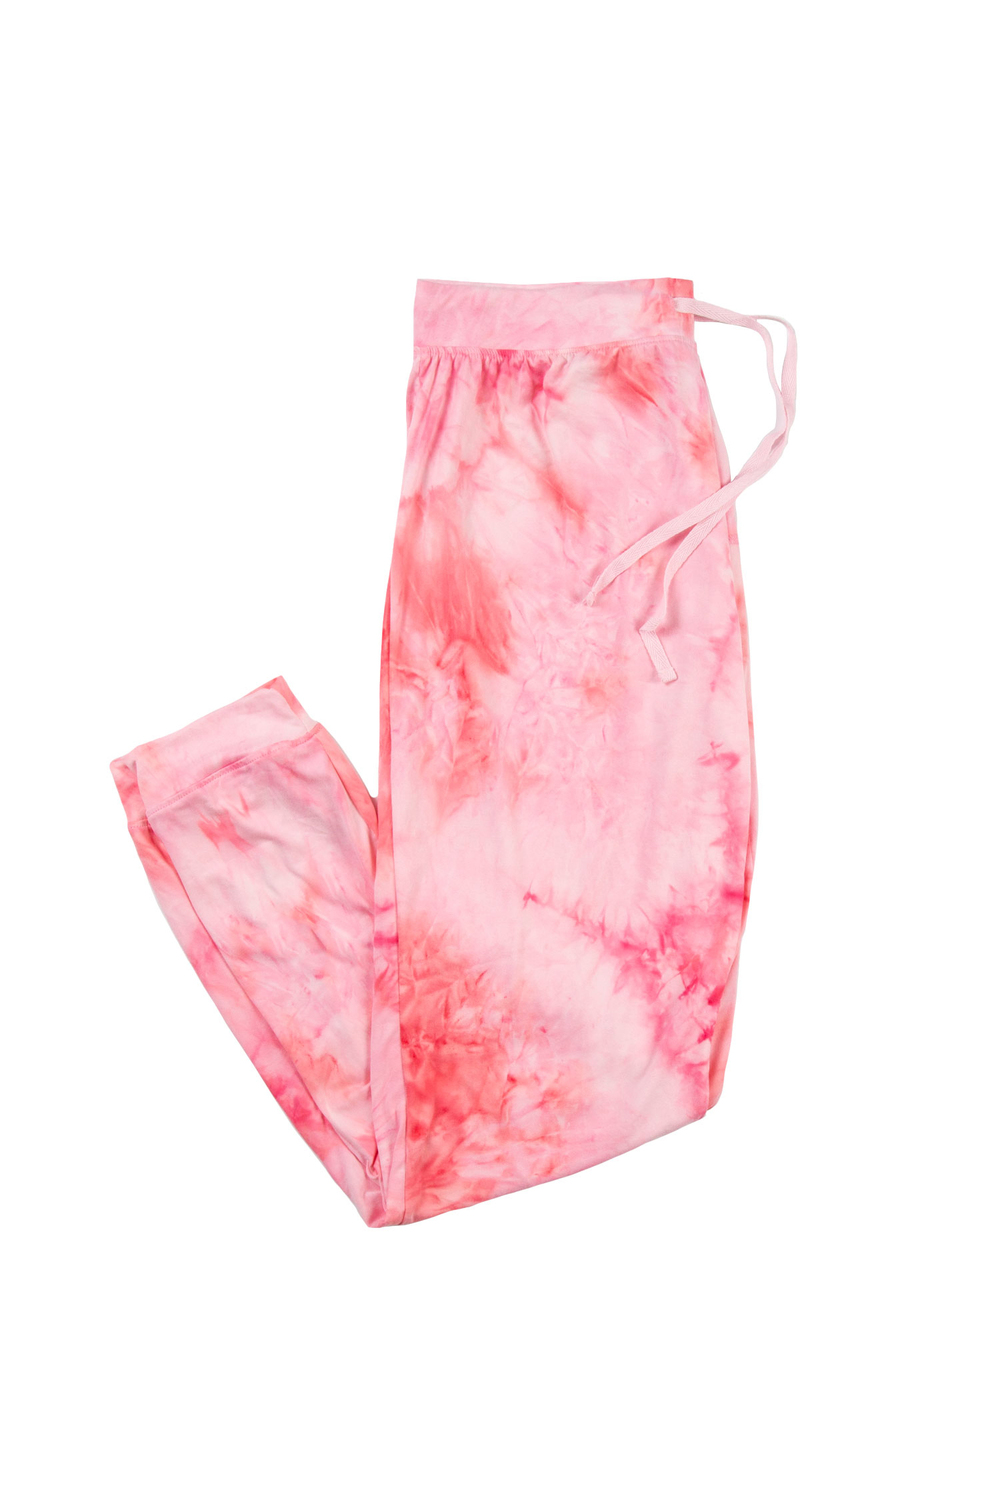 Pantalon de pyjama style jogger en tricot extensible, tie-dye rose, très grand (TG)